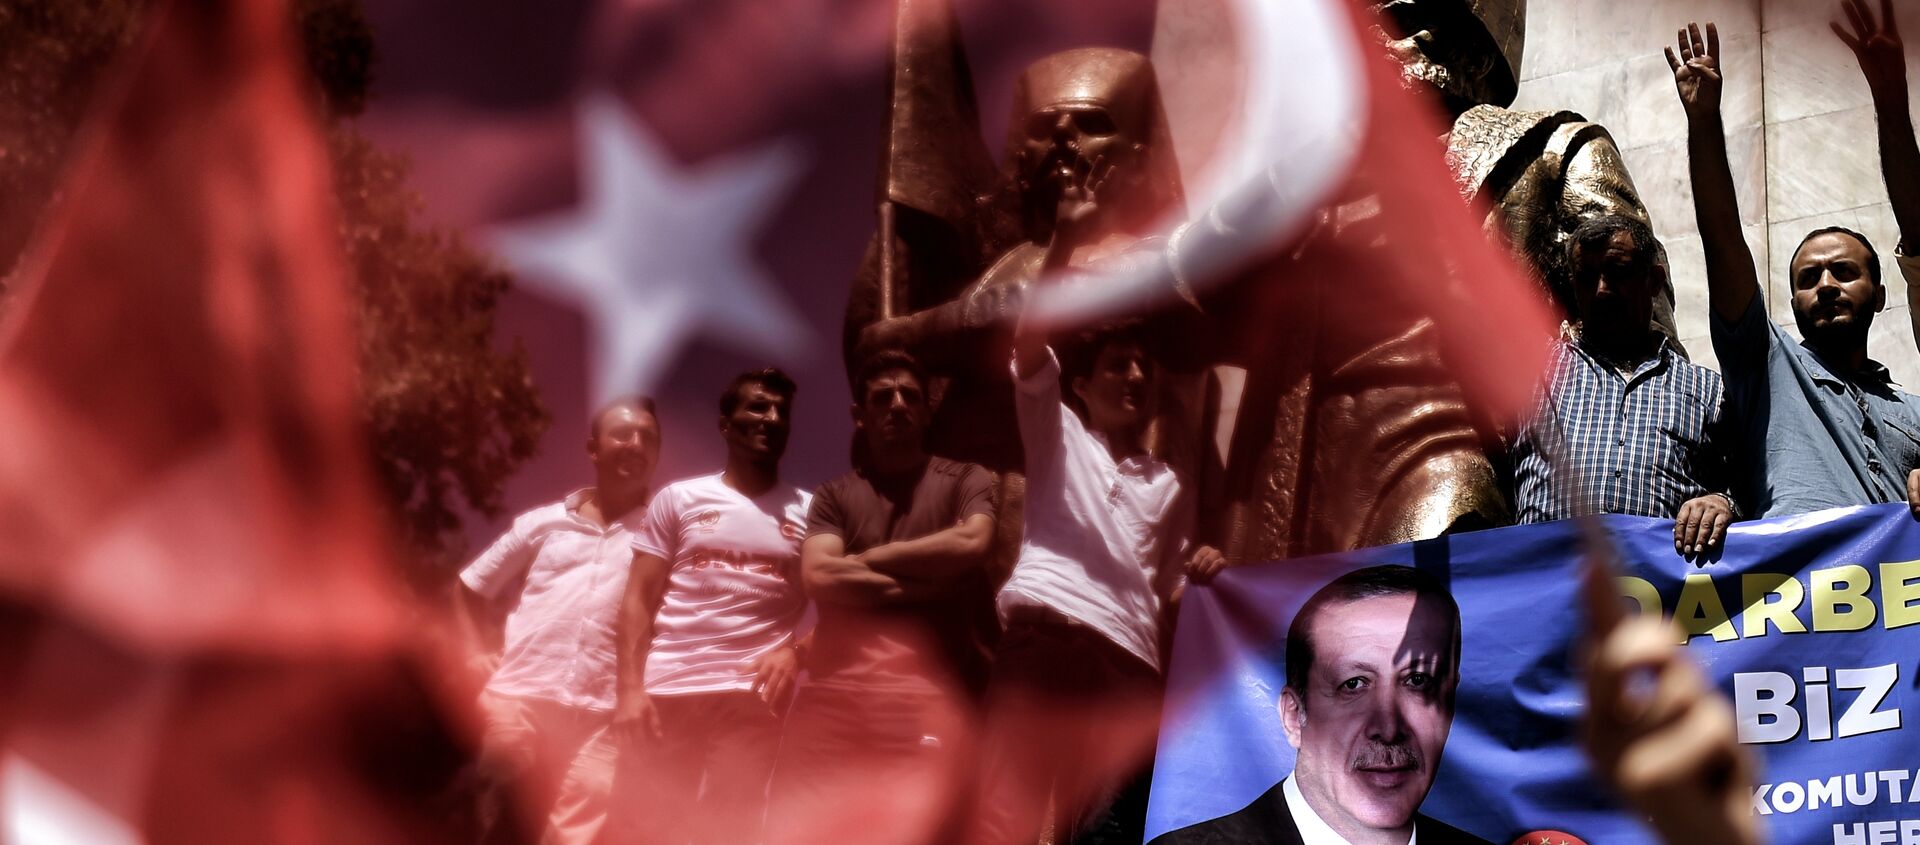 Ердоганове присталице машу турским националним заставама током митинга на тргу Таксим у Истанбулу, 18. јула - Sputnik Србија, 1920, 15.05.2018